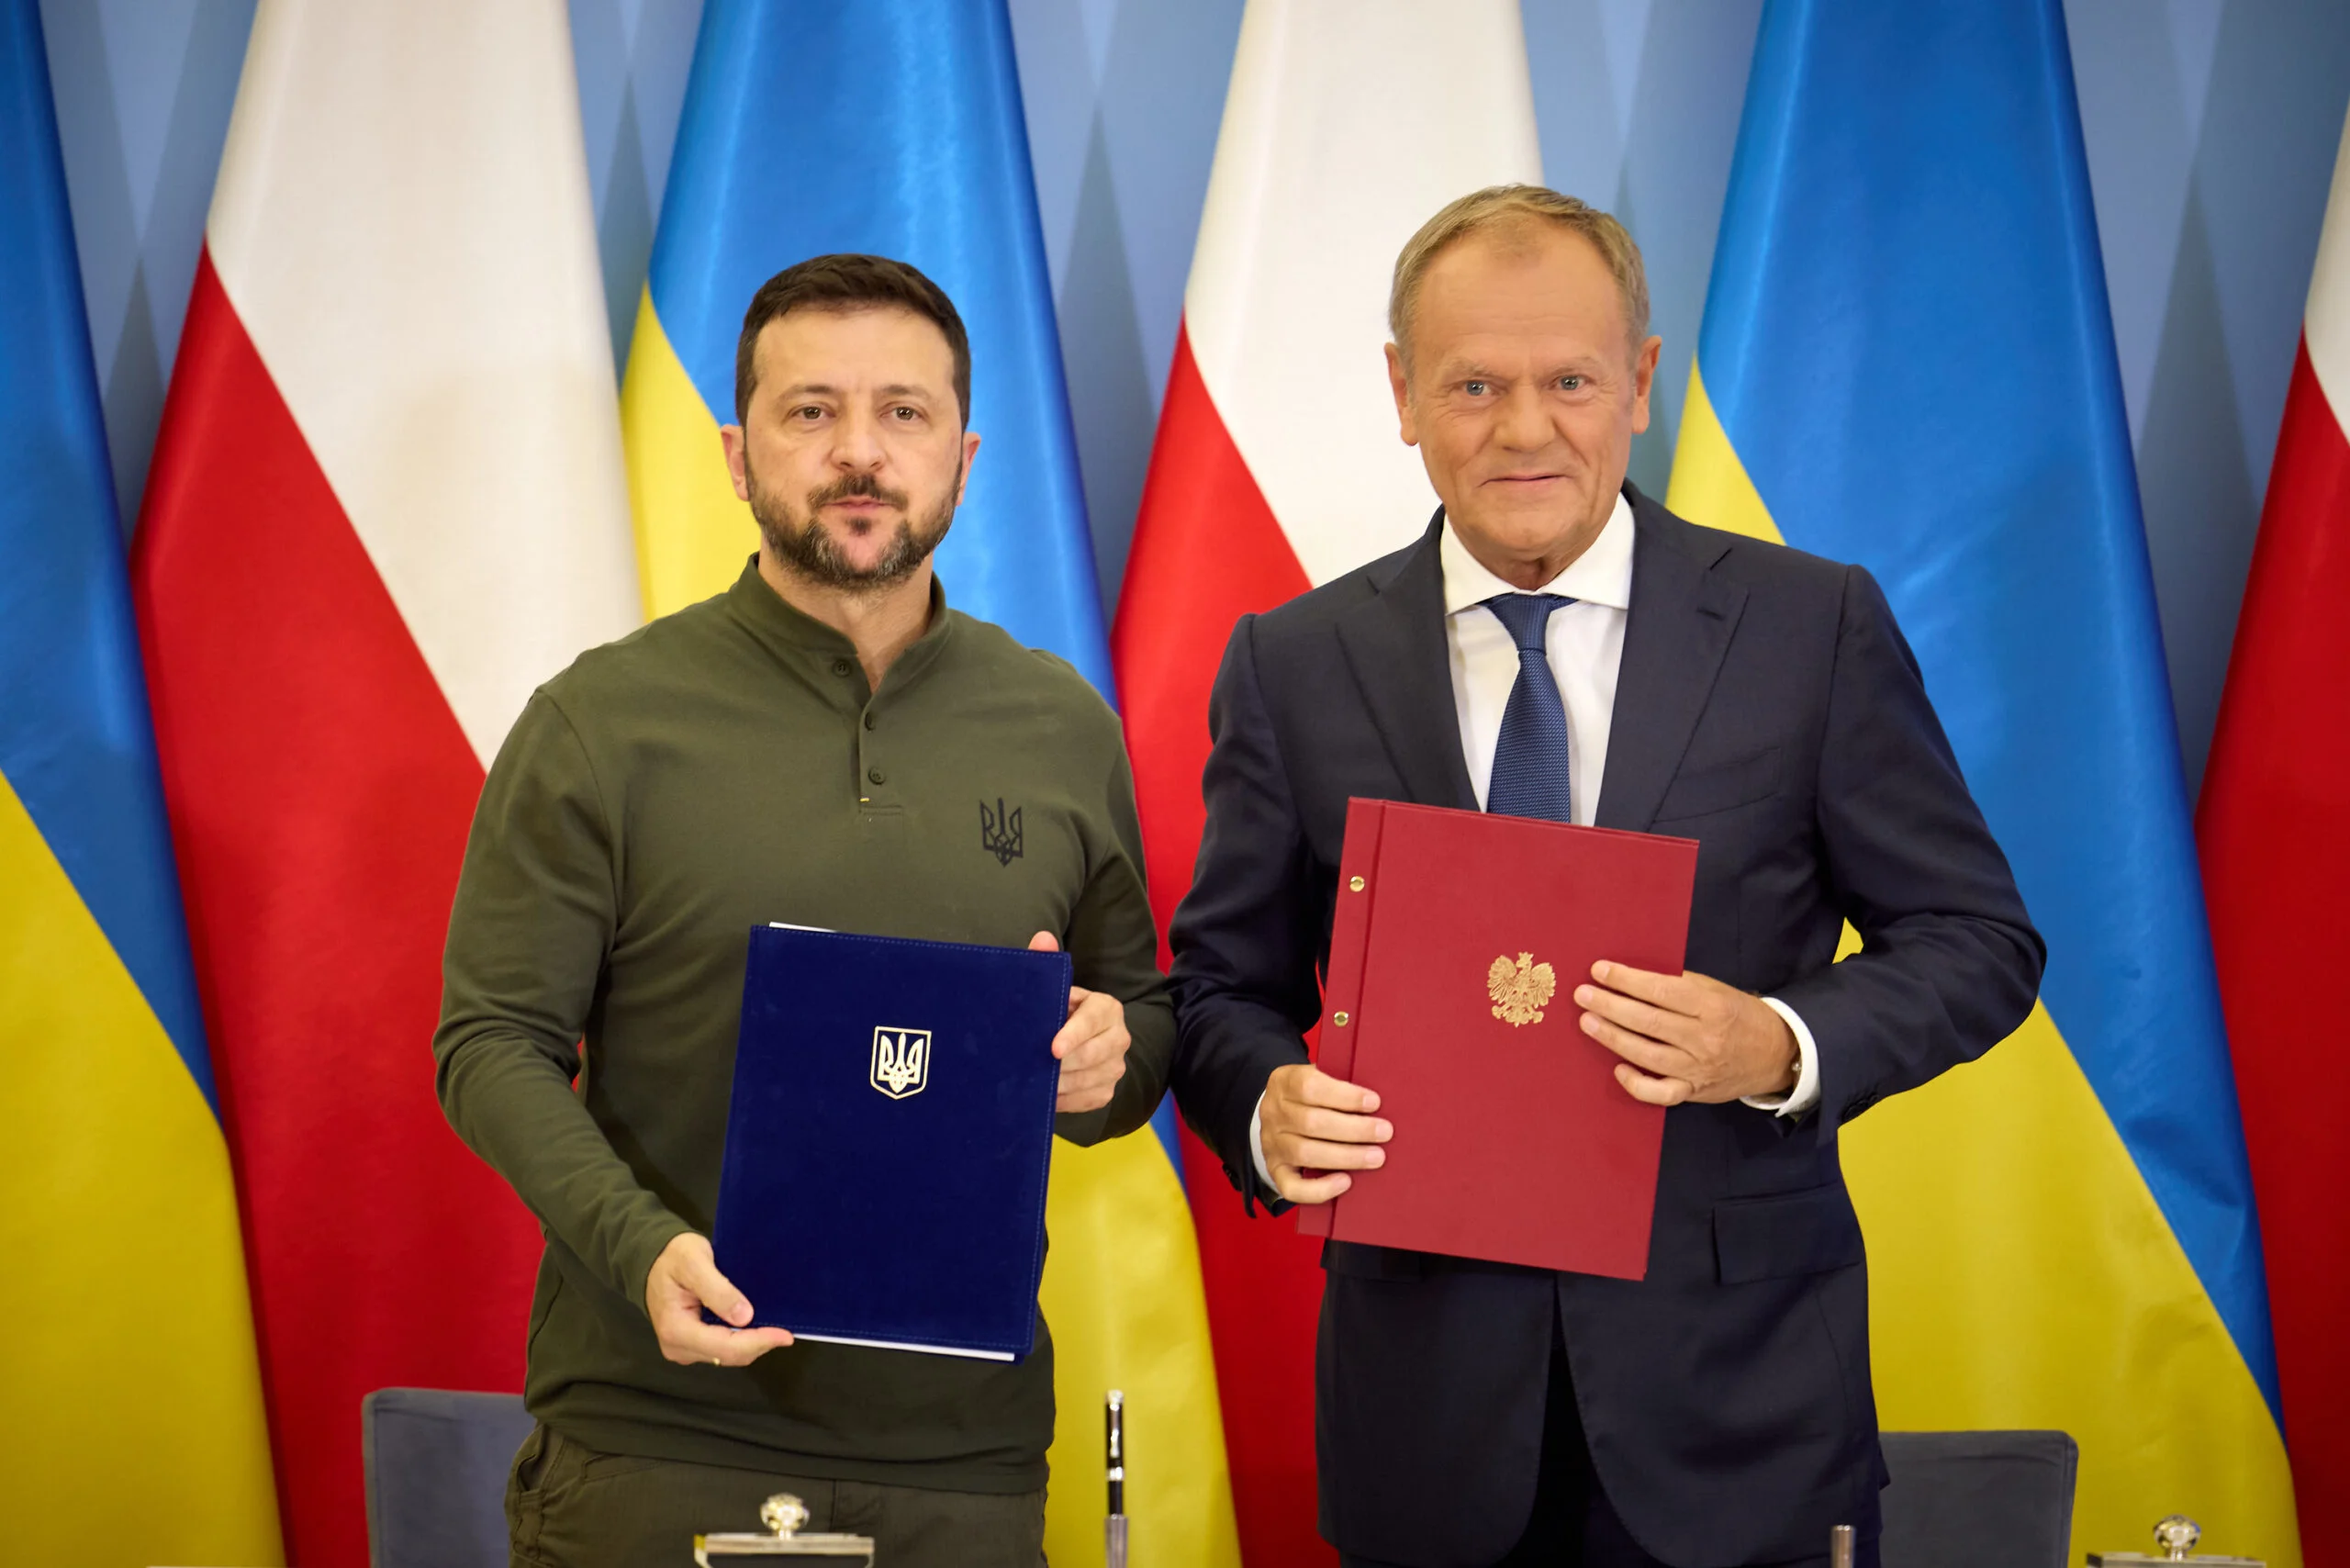 Polska wciągana w konflikt: manipulacje i niebezpieczne decyzje